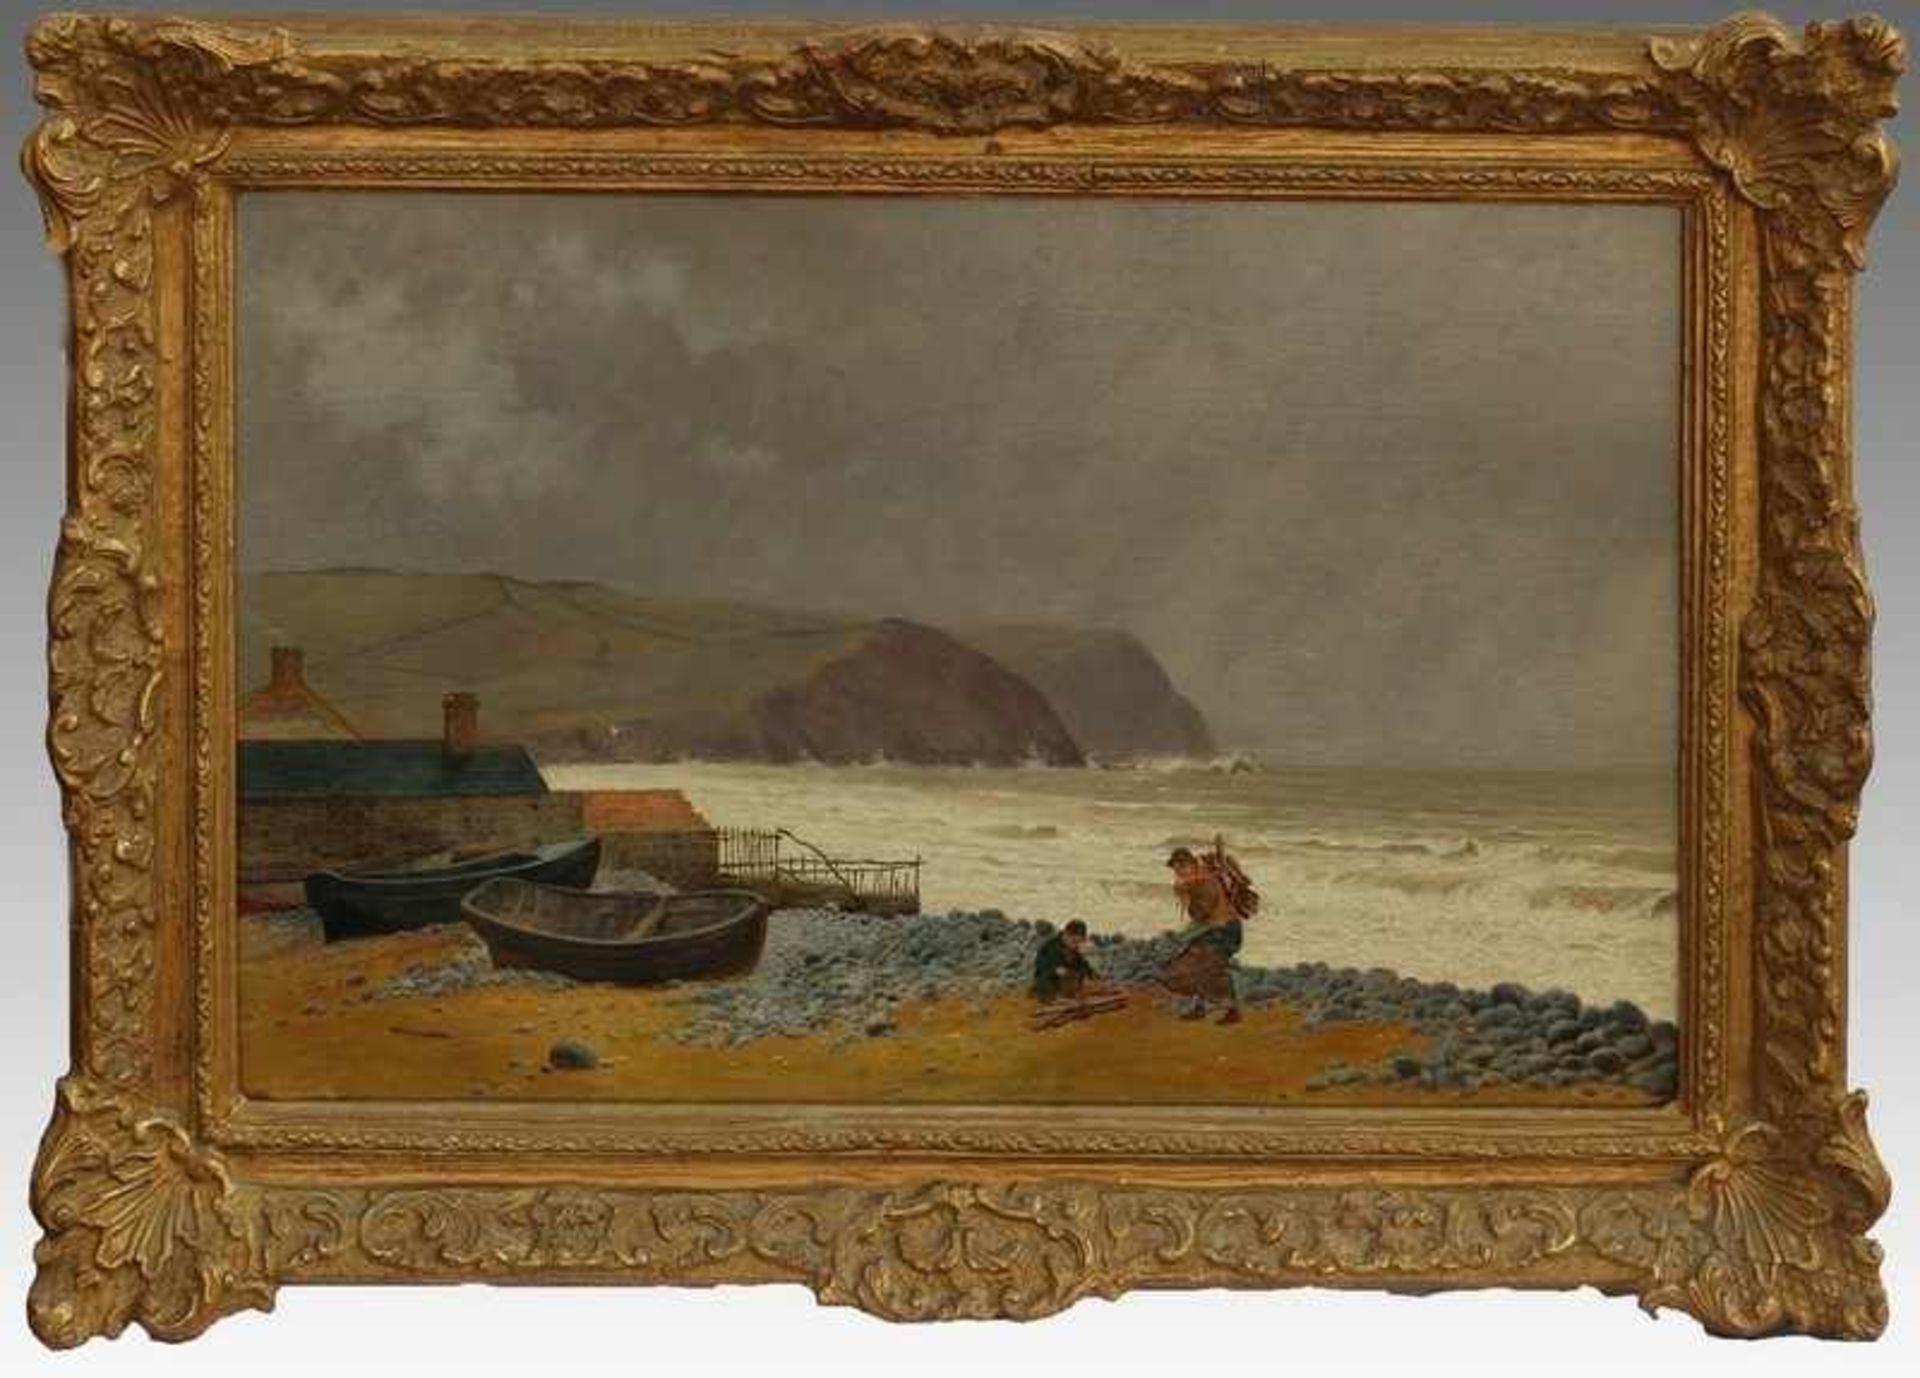 Cooke, Edward William 1811 London-1880 Groombridge, engl. Landschafts-/Marinemaler, "